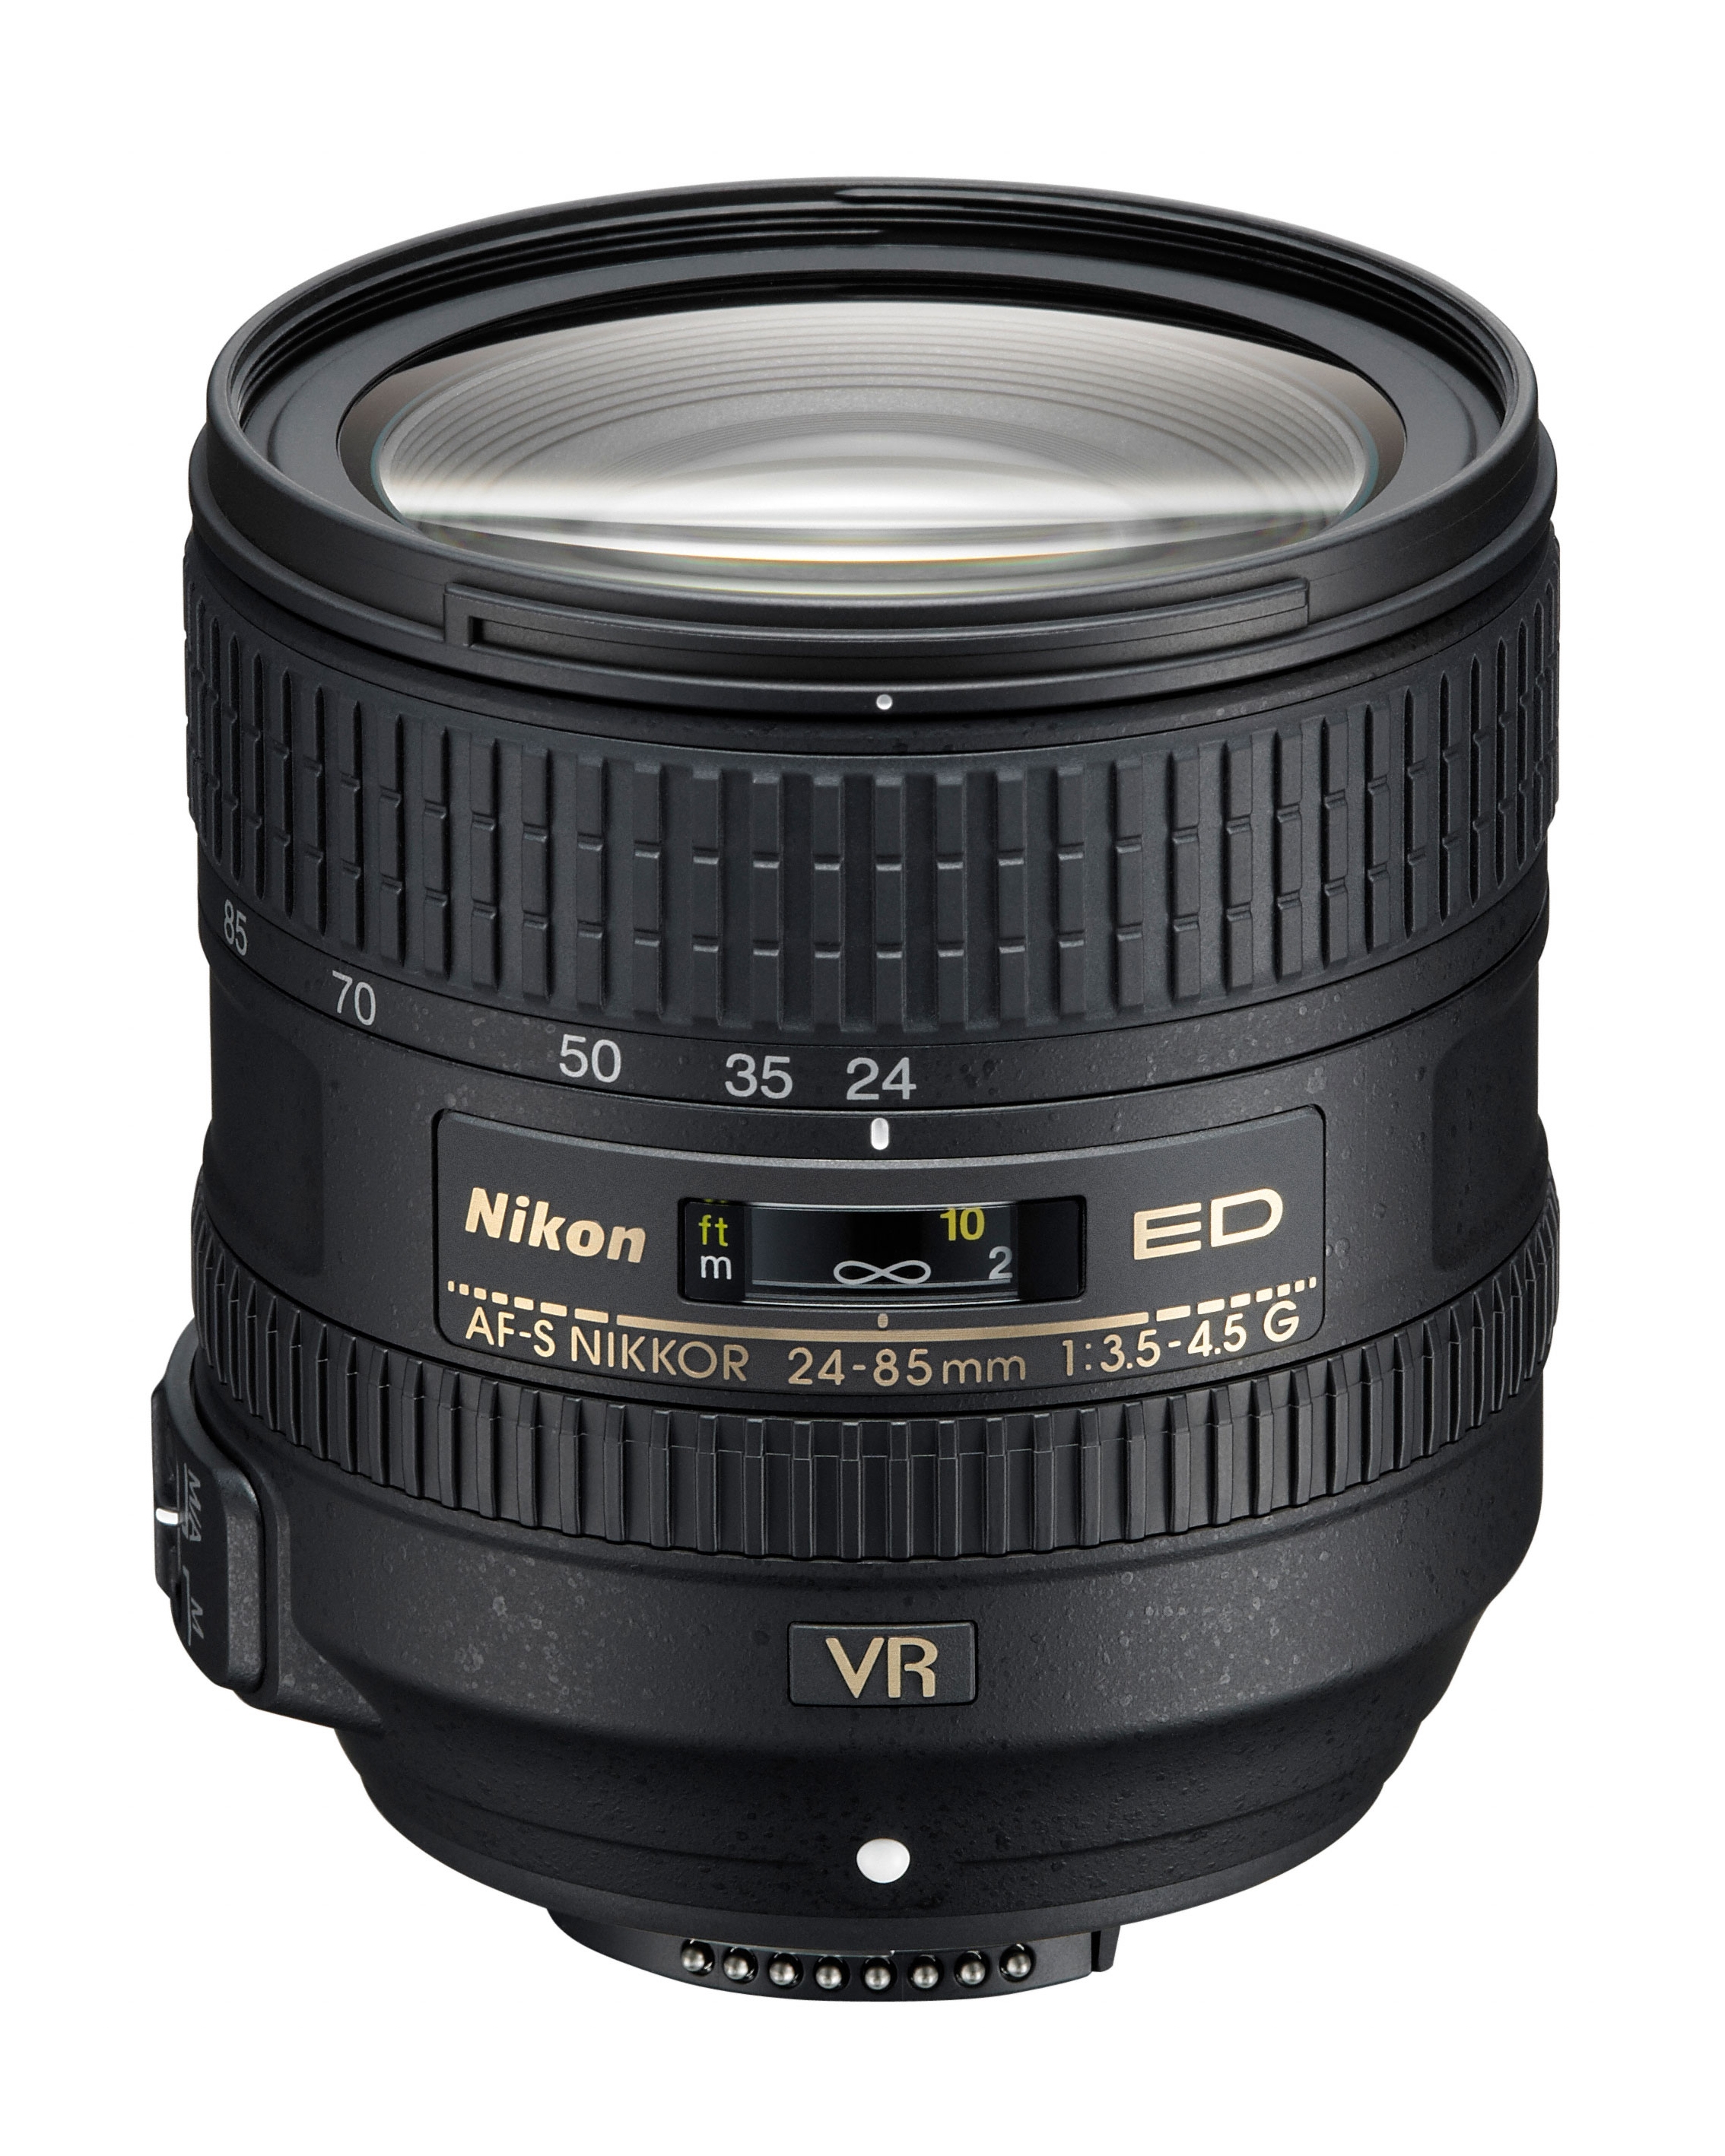 Nikon AF-S Nikkor 24-85mm f/3.5-4.5G ED VR lens